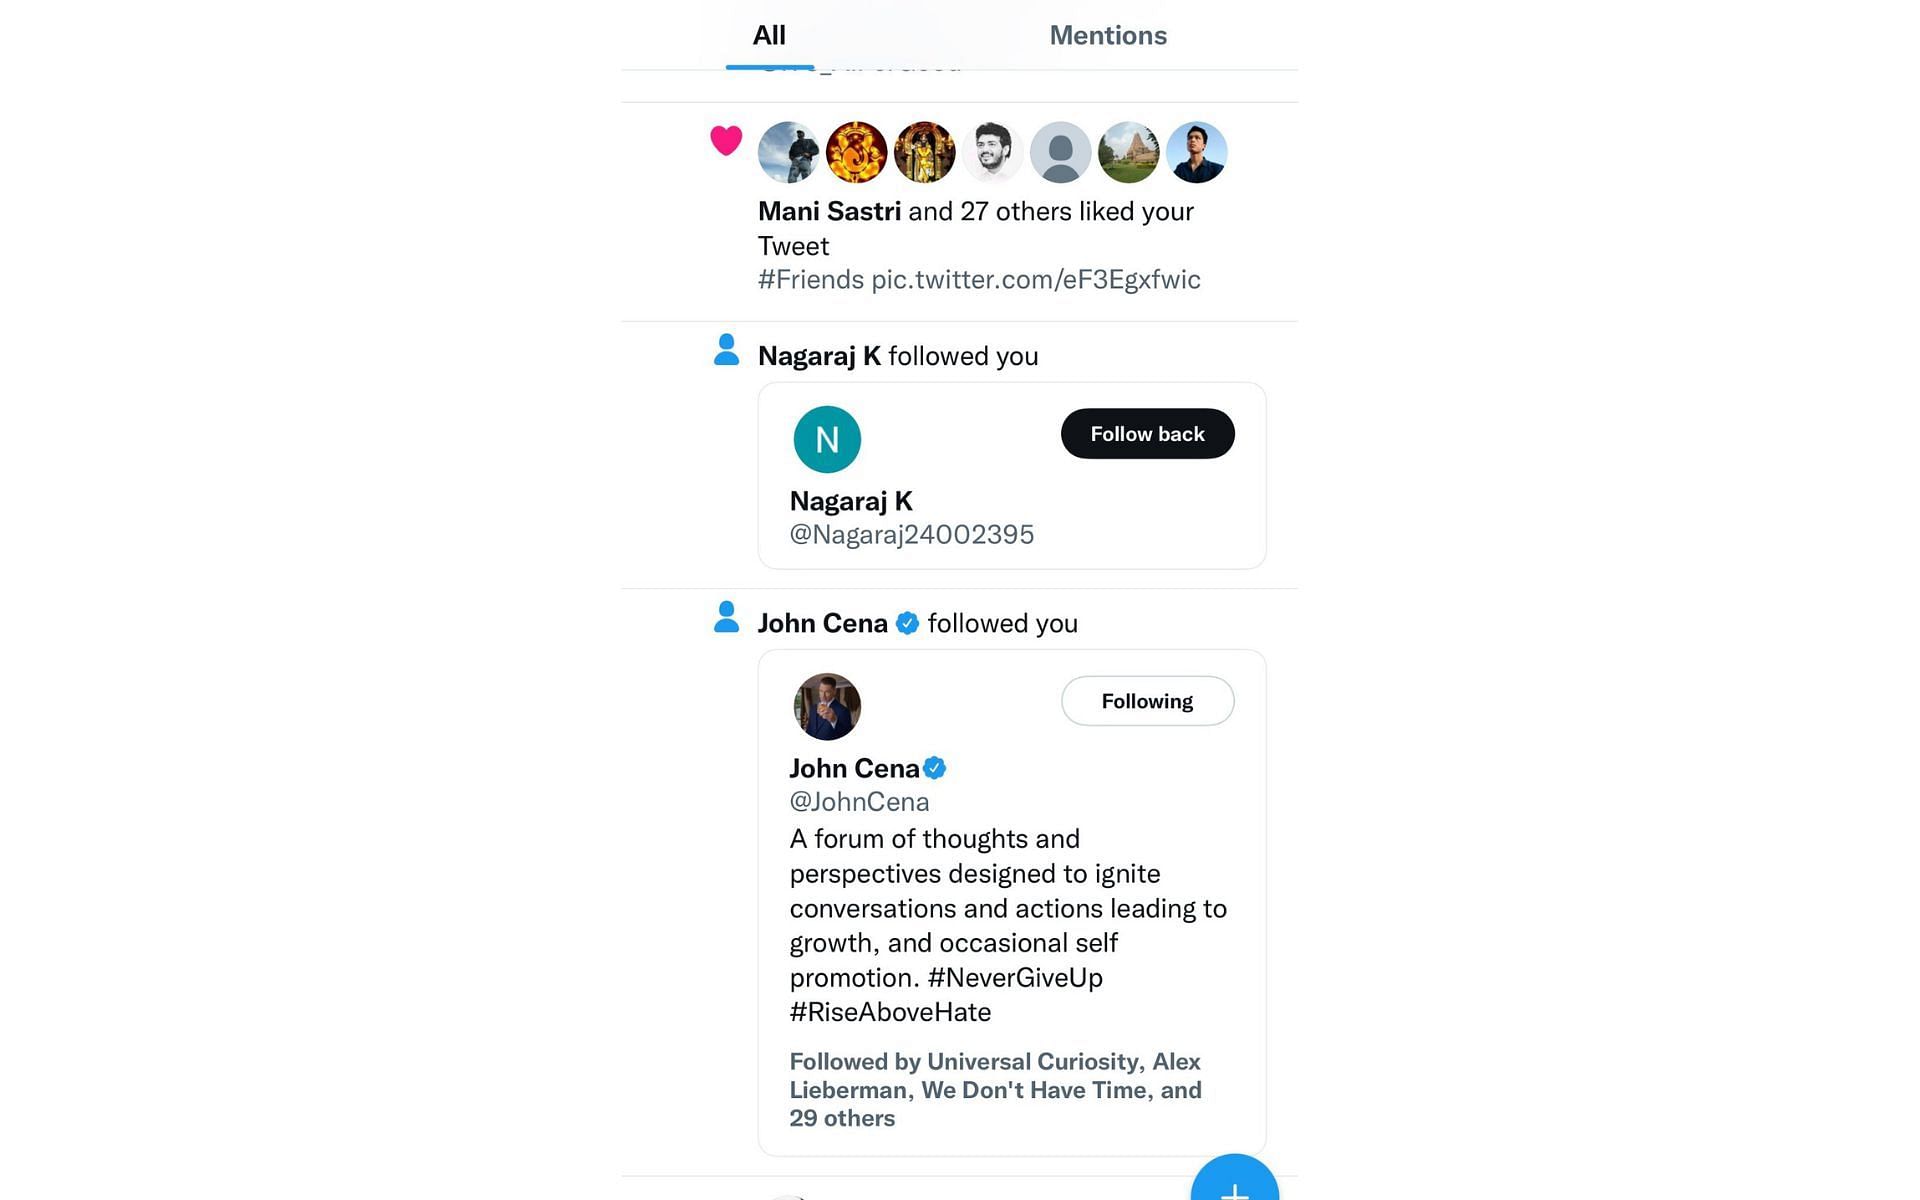 Agnishwar Jayaprakash shared a screenshot where John Cena followed him on Twitter